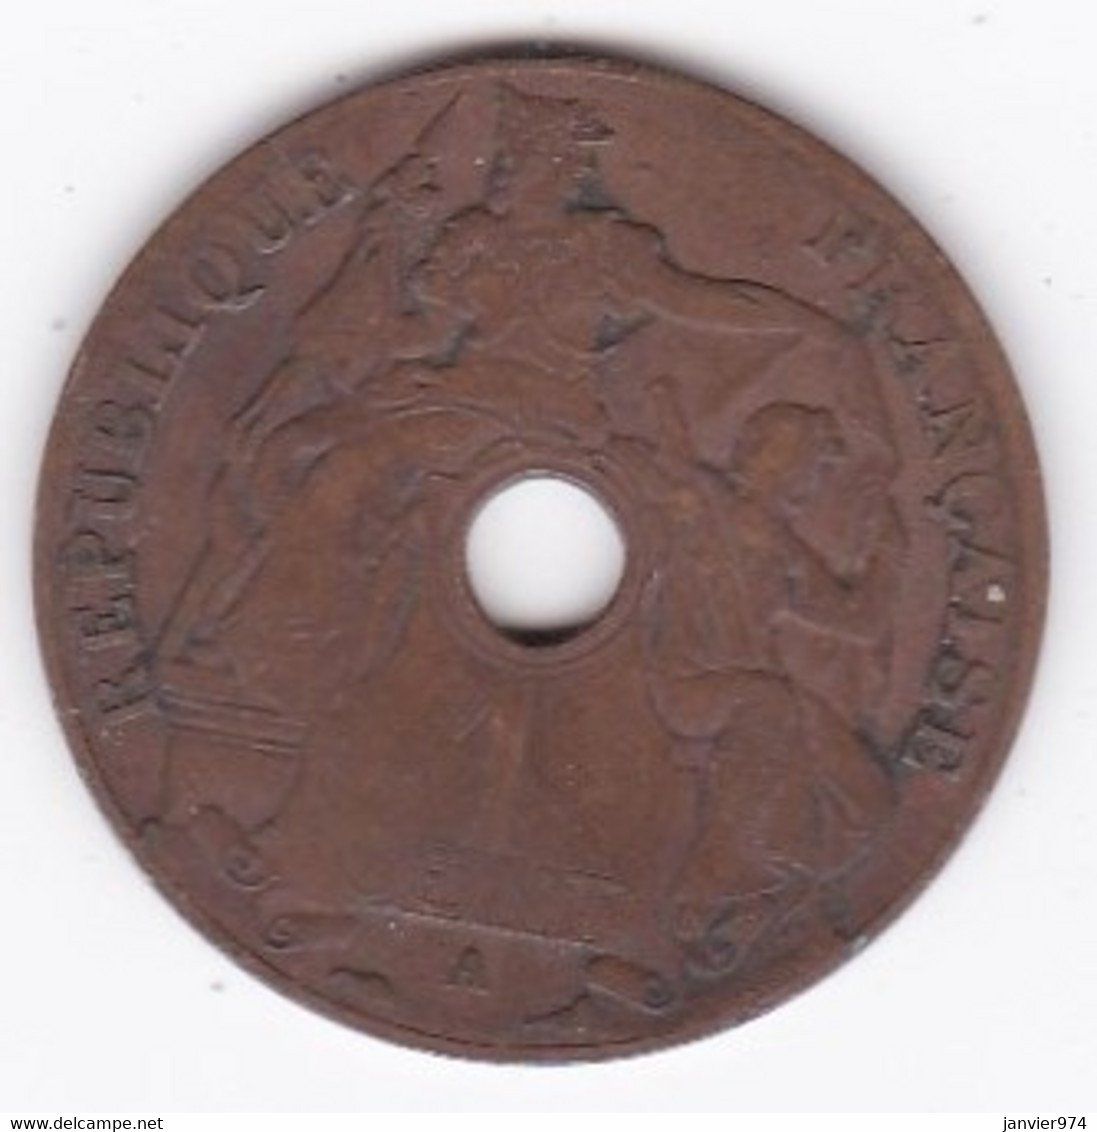 Indochine Française 1 Cent 1911 A Paris, Bronze , Lec 72 - Indochine